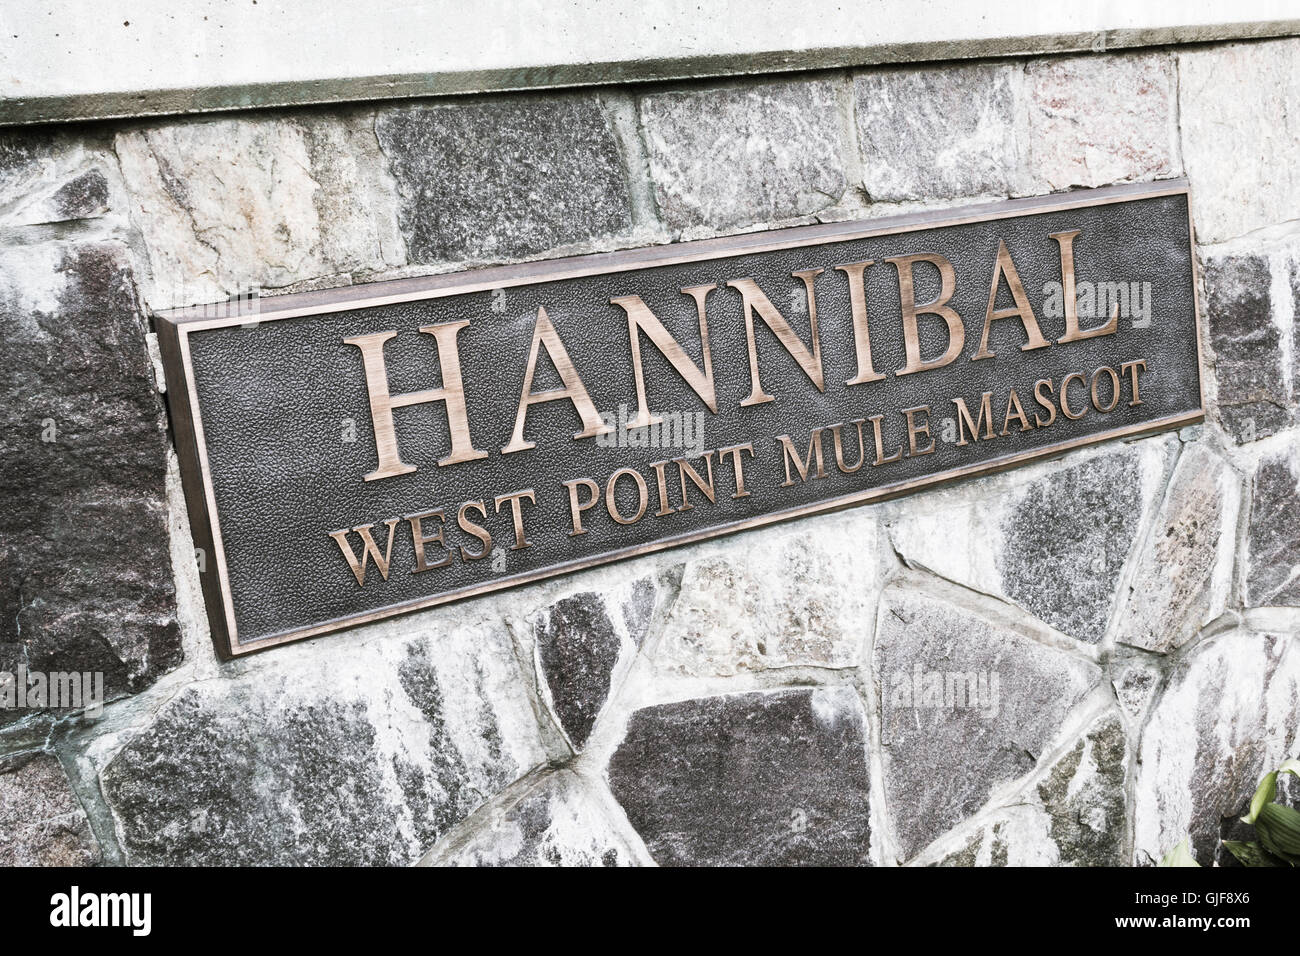 Hannibal Ejército Mula mascota Placa, West Point, NY, EE.UU. Foto de stock